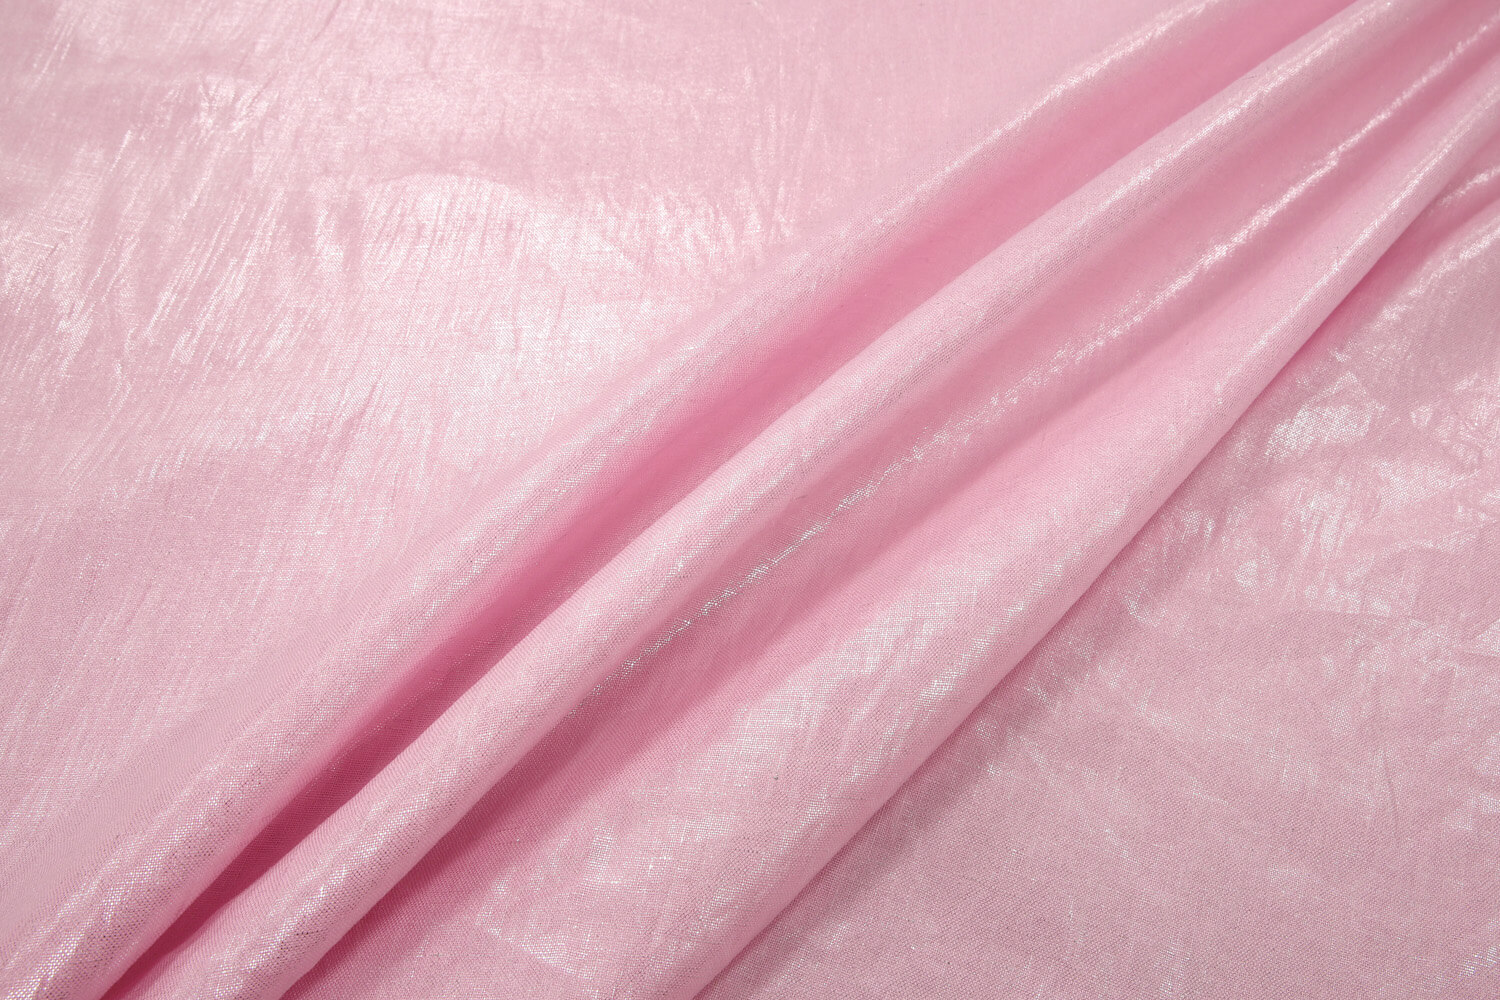 Льняная ткань с накатом Брун-ло Кучин-ли, цвет Розовый